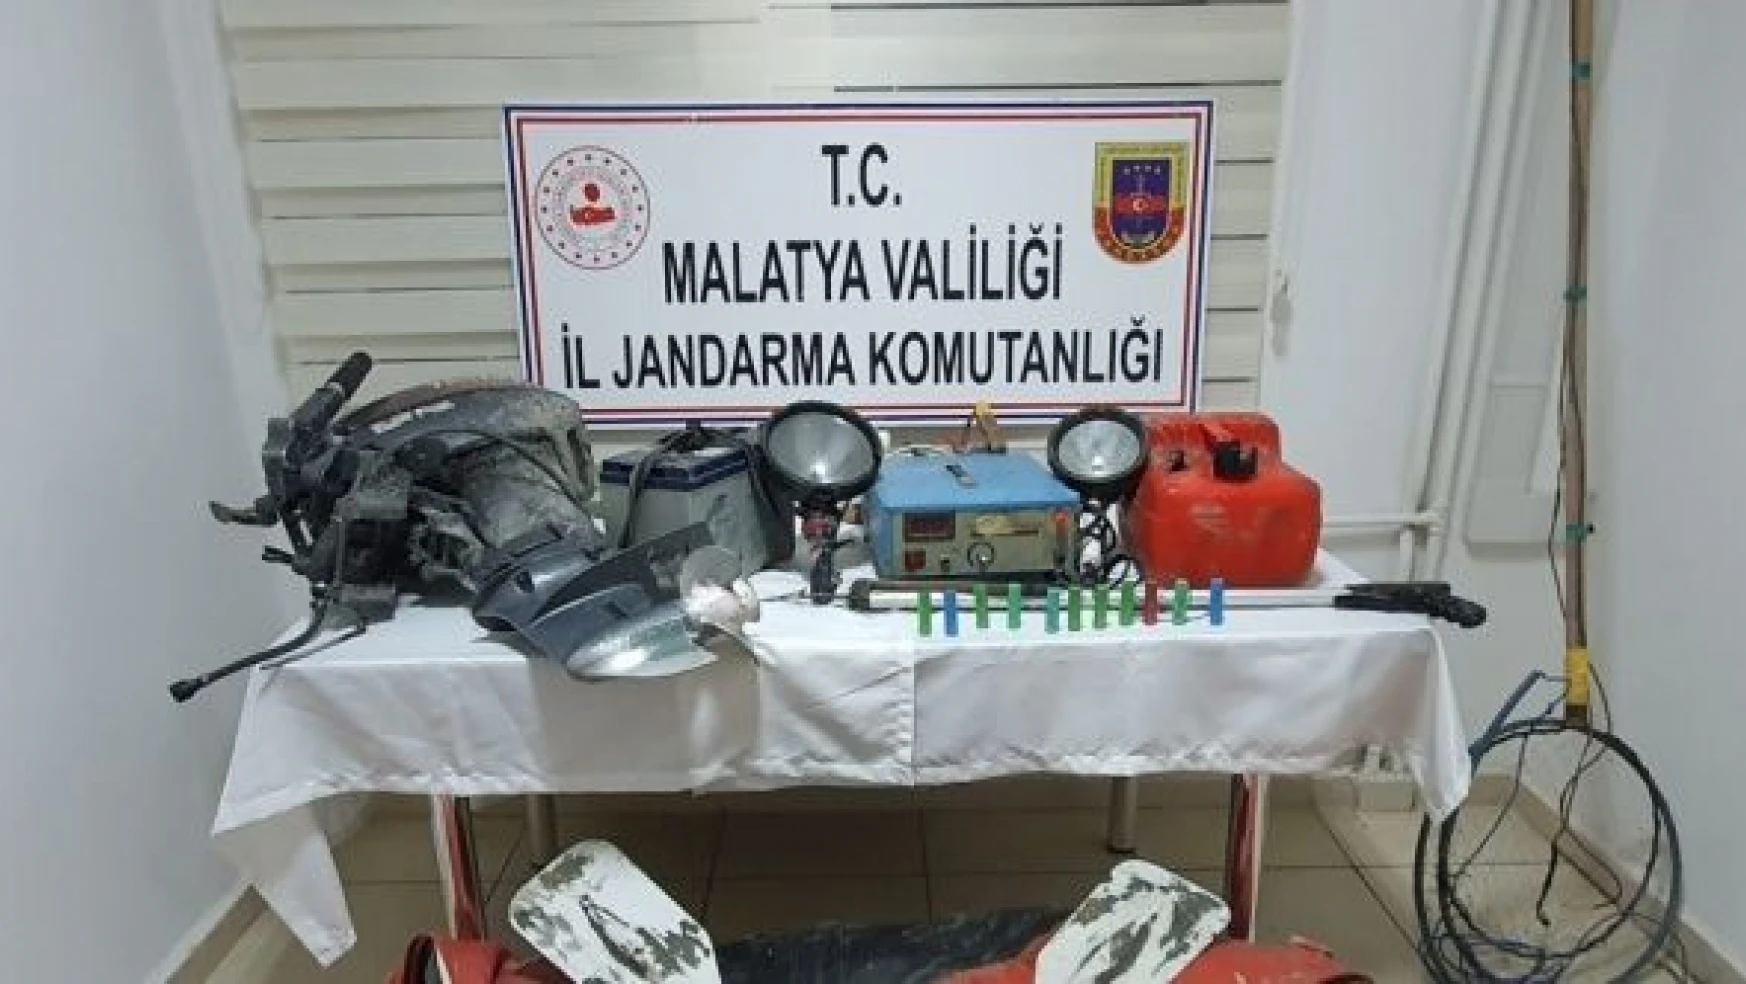 Malatya'da elektroşokla balık avcılığına rekor ceza!